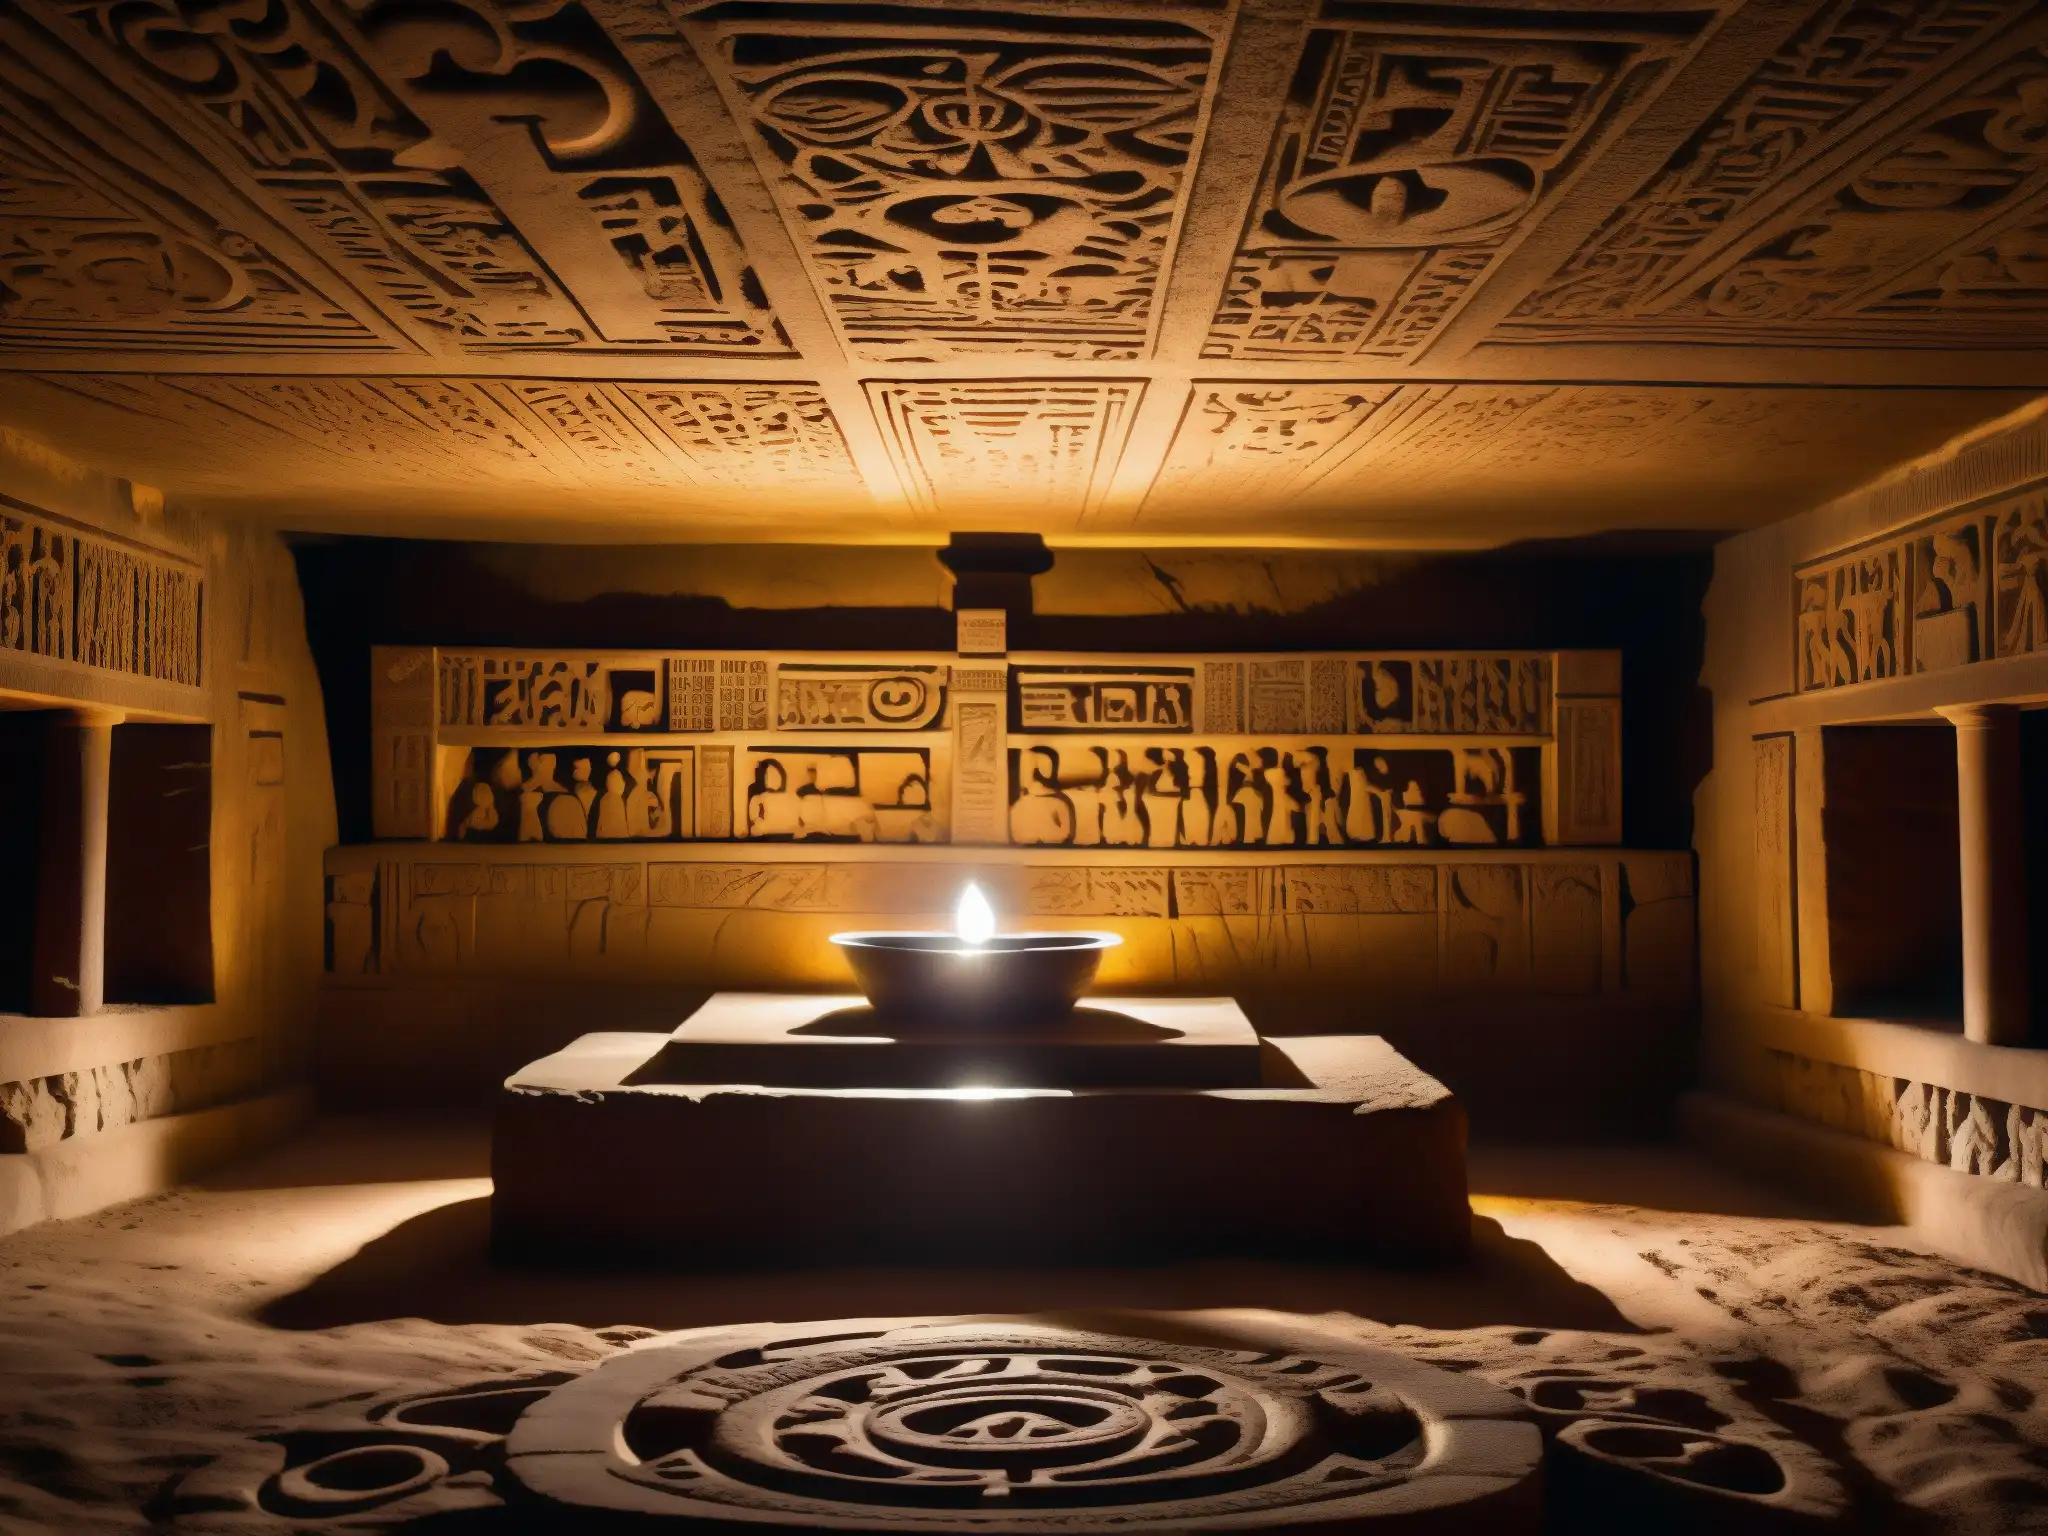 Un antiguo altar de piedra en una cámara subterránea iluminada por una sola luz, evocando un aura de misterio y maravilla